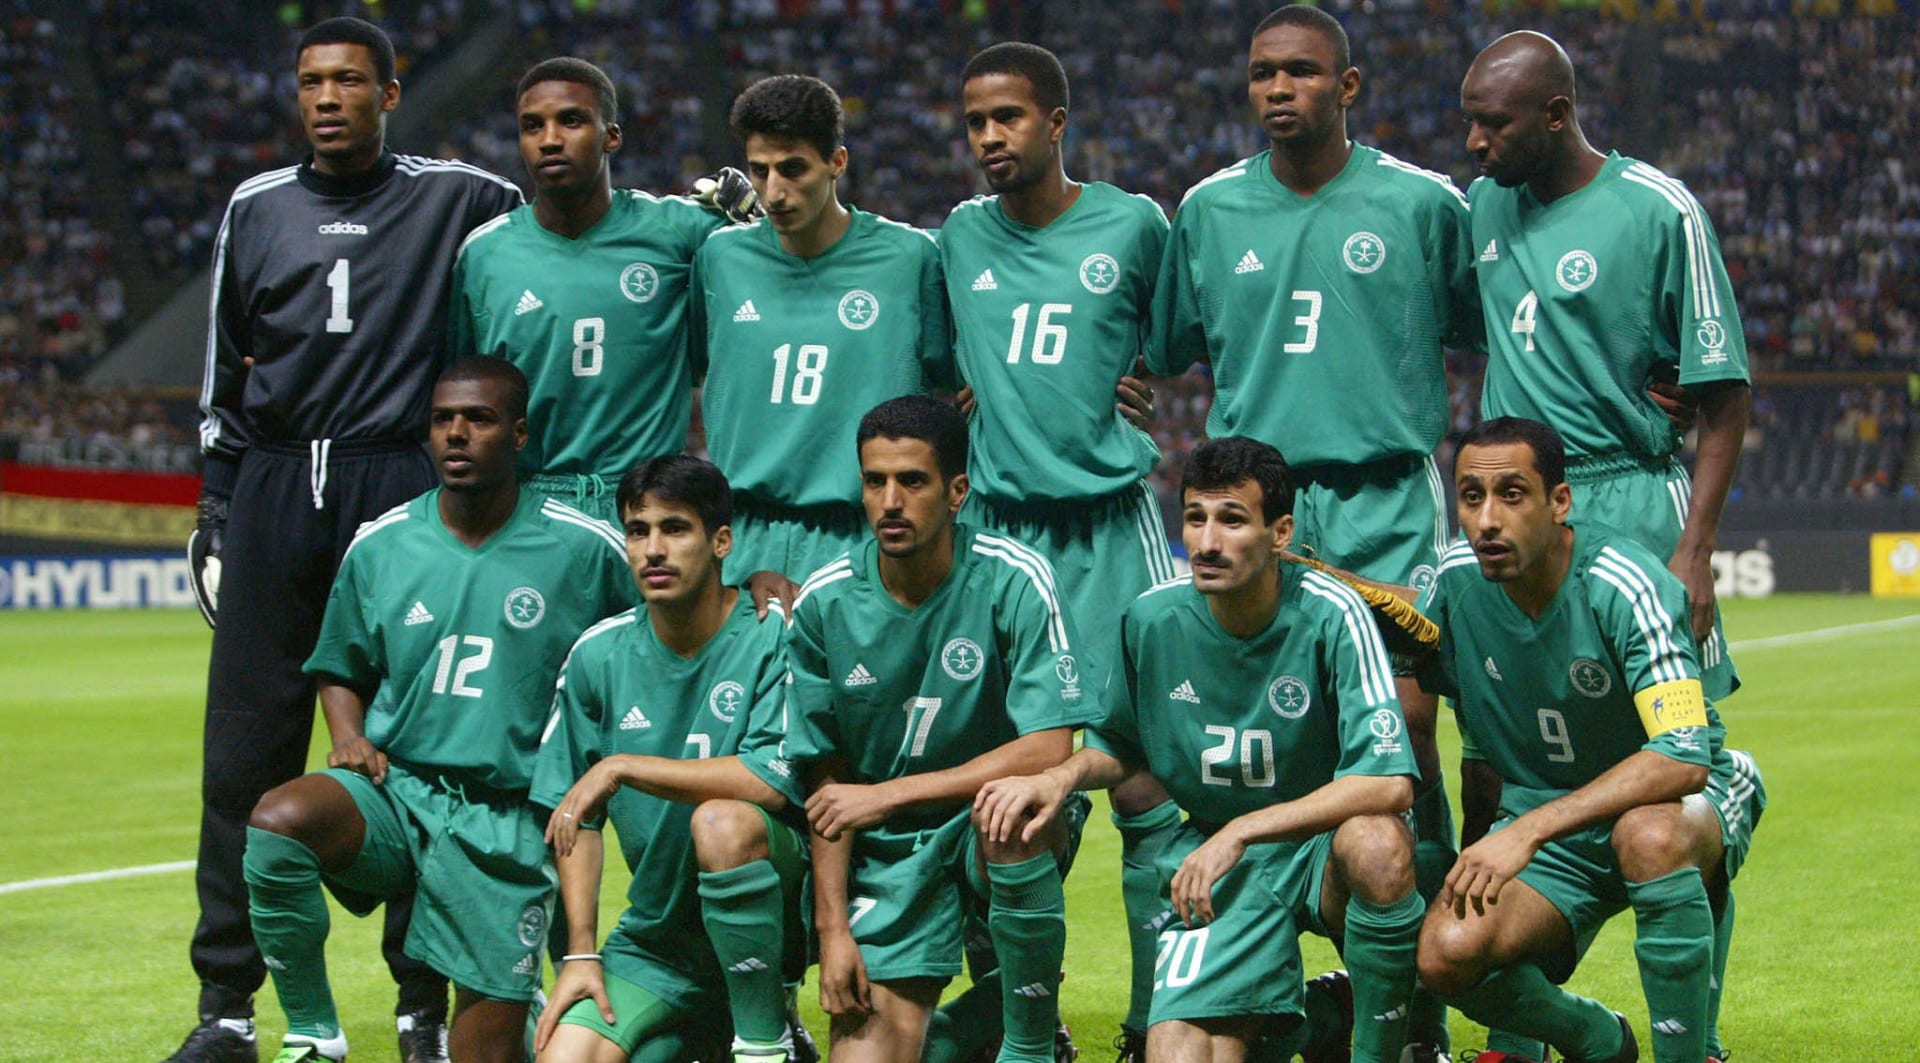 حارس المرمى الدعيع مع اعضاء المنتخب السعودي بكأس العالم 2002